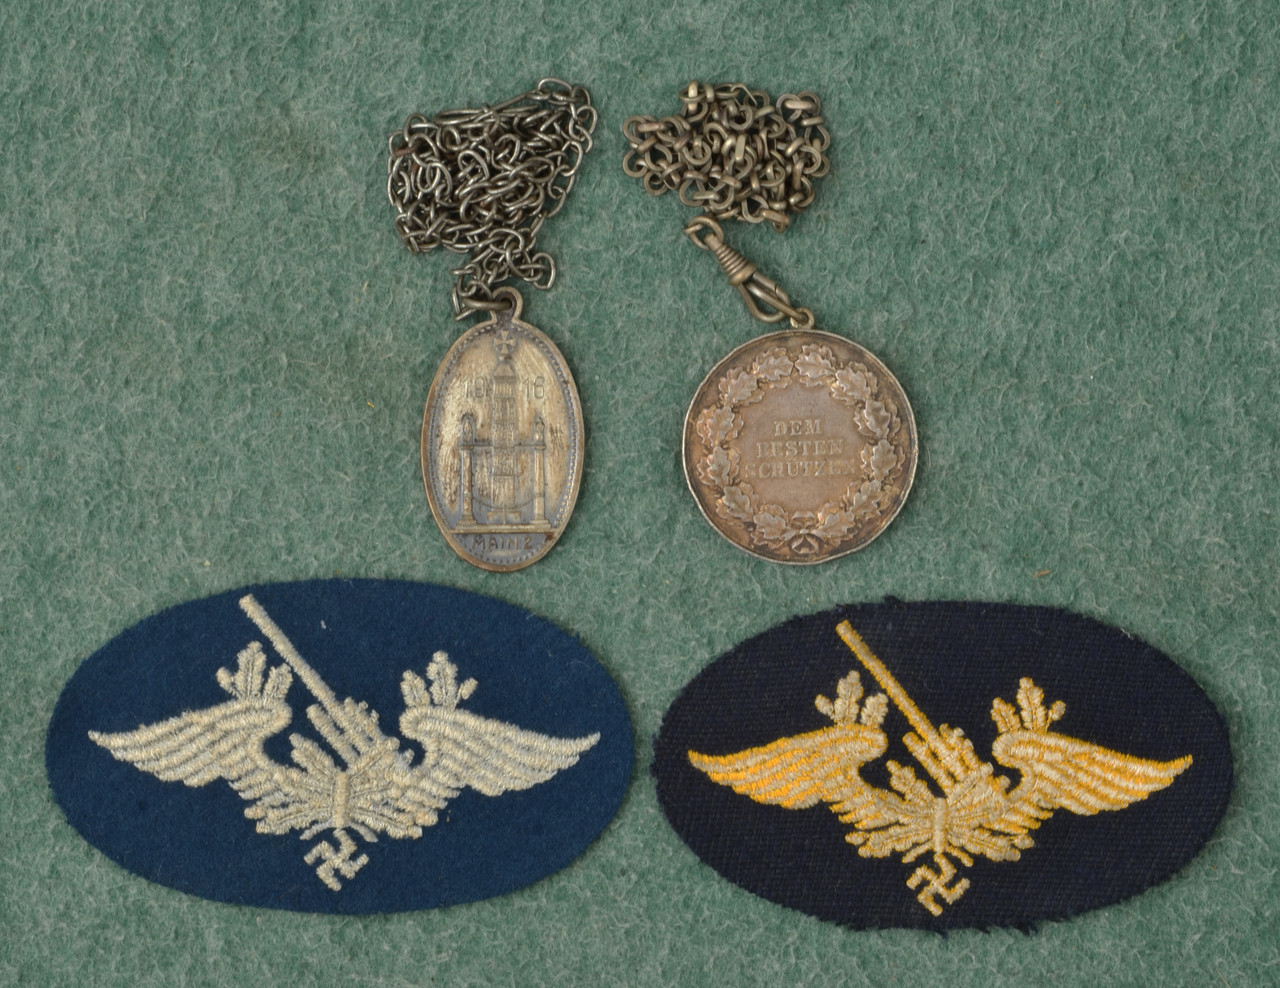 Von Preussen Medals (2)+FLAKE PERSONNEL PATCHES - C54779